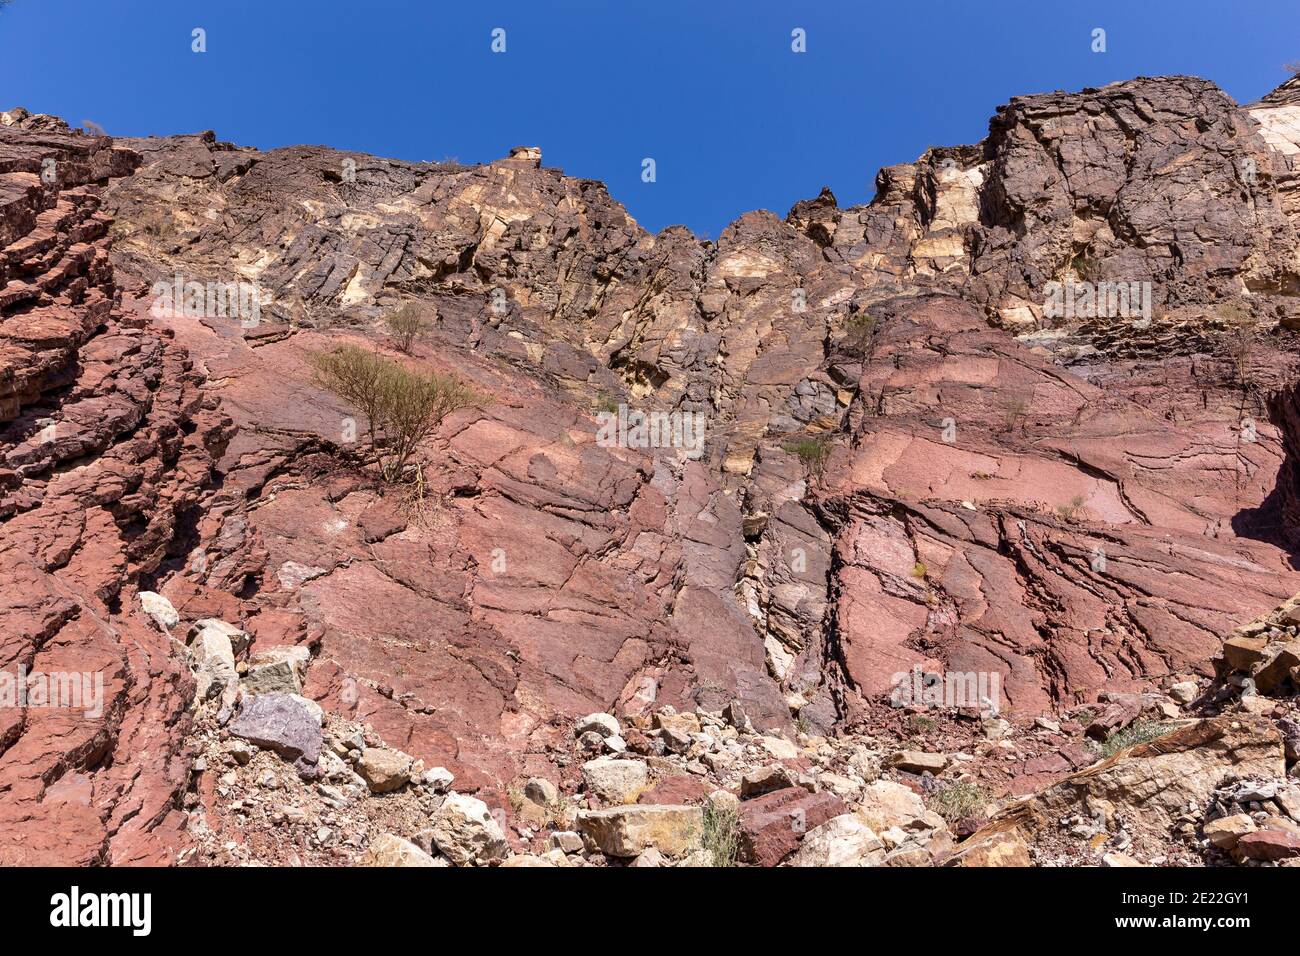 Formaciones rocosas de piedra caliza roja y dolomita en las montañas Hajar en la Península Arábiga, Emiratos Árabes Unidos, Hatta. Foto de stock